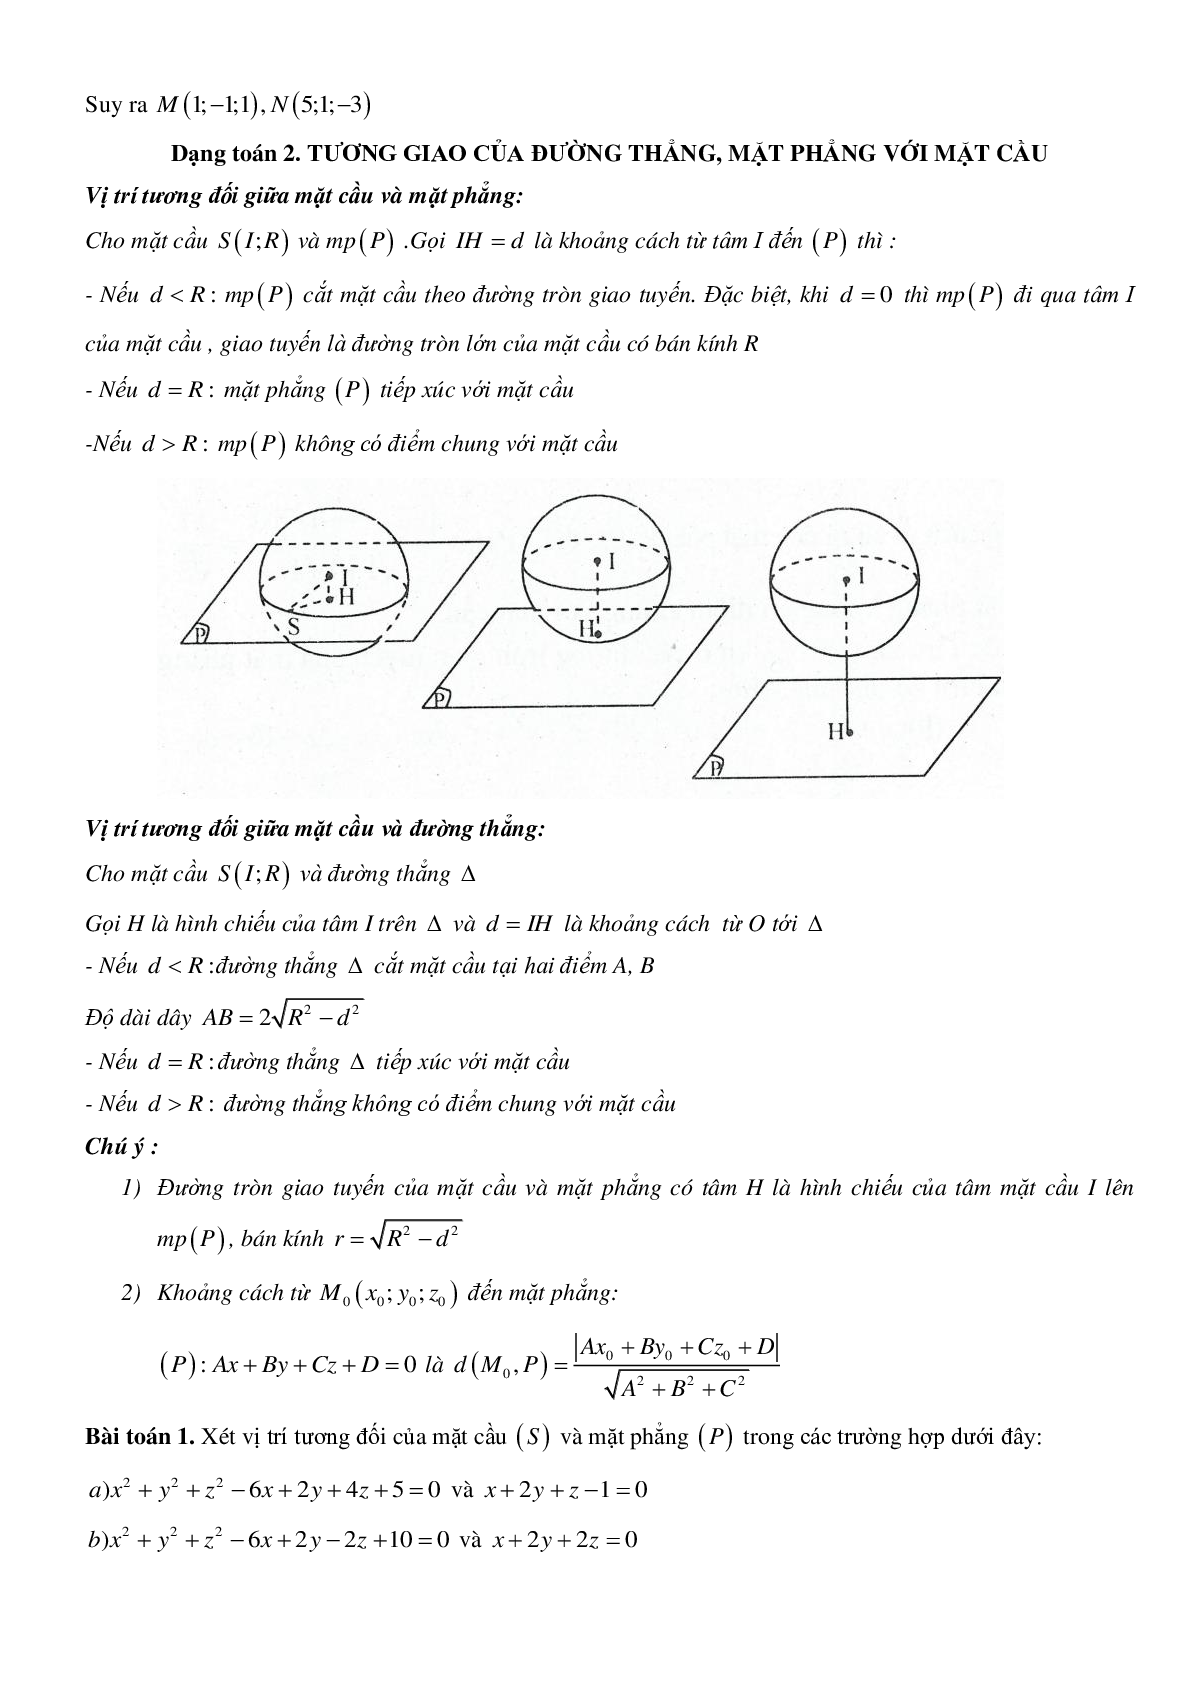 Tương giao của đường thẳng, mặt phẳng và mặt cầu (trang 6)